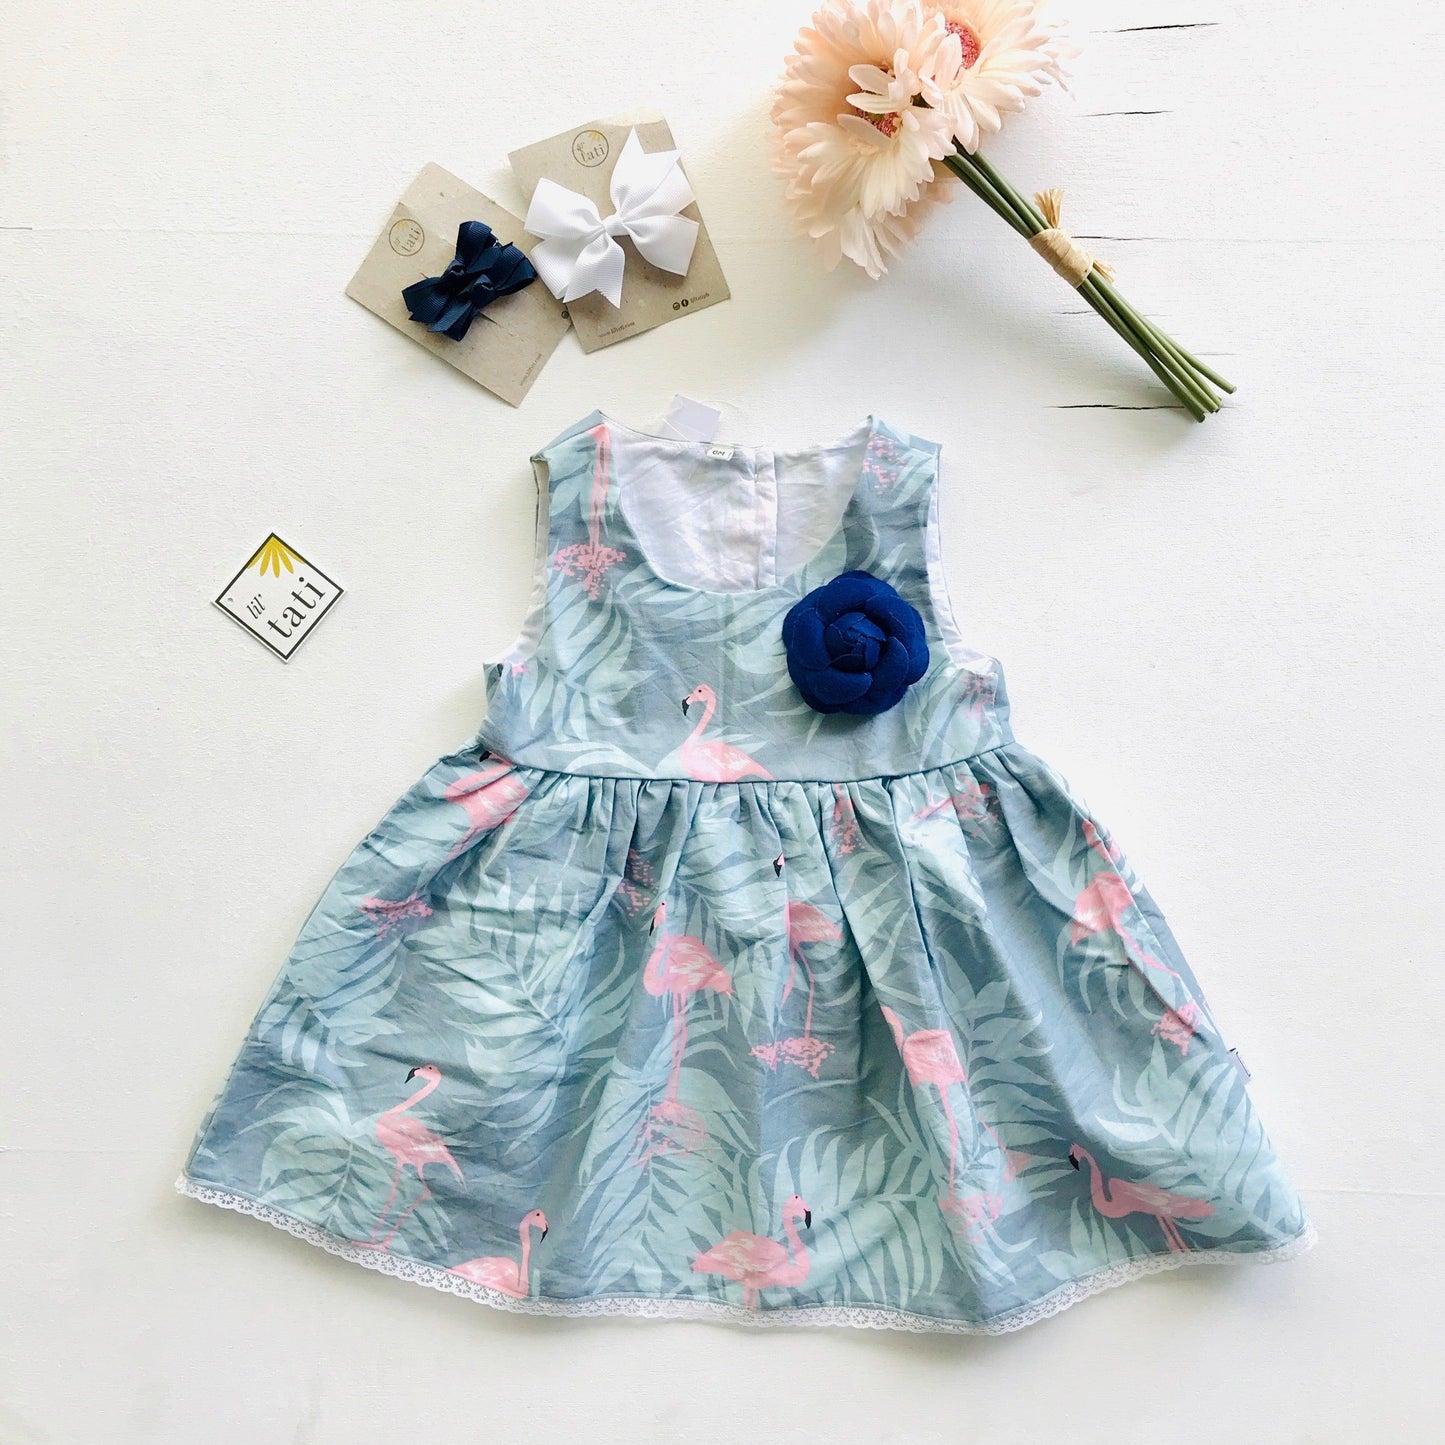 Iris Dress in Flamingo Summer - Blue - Lil' Tati